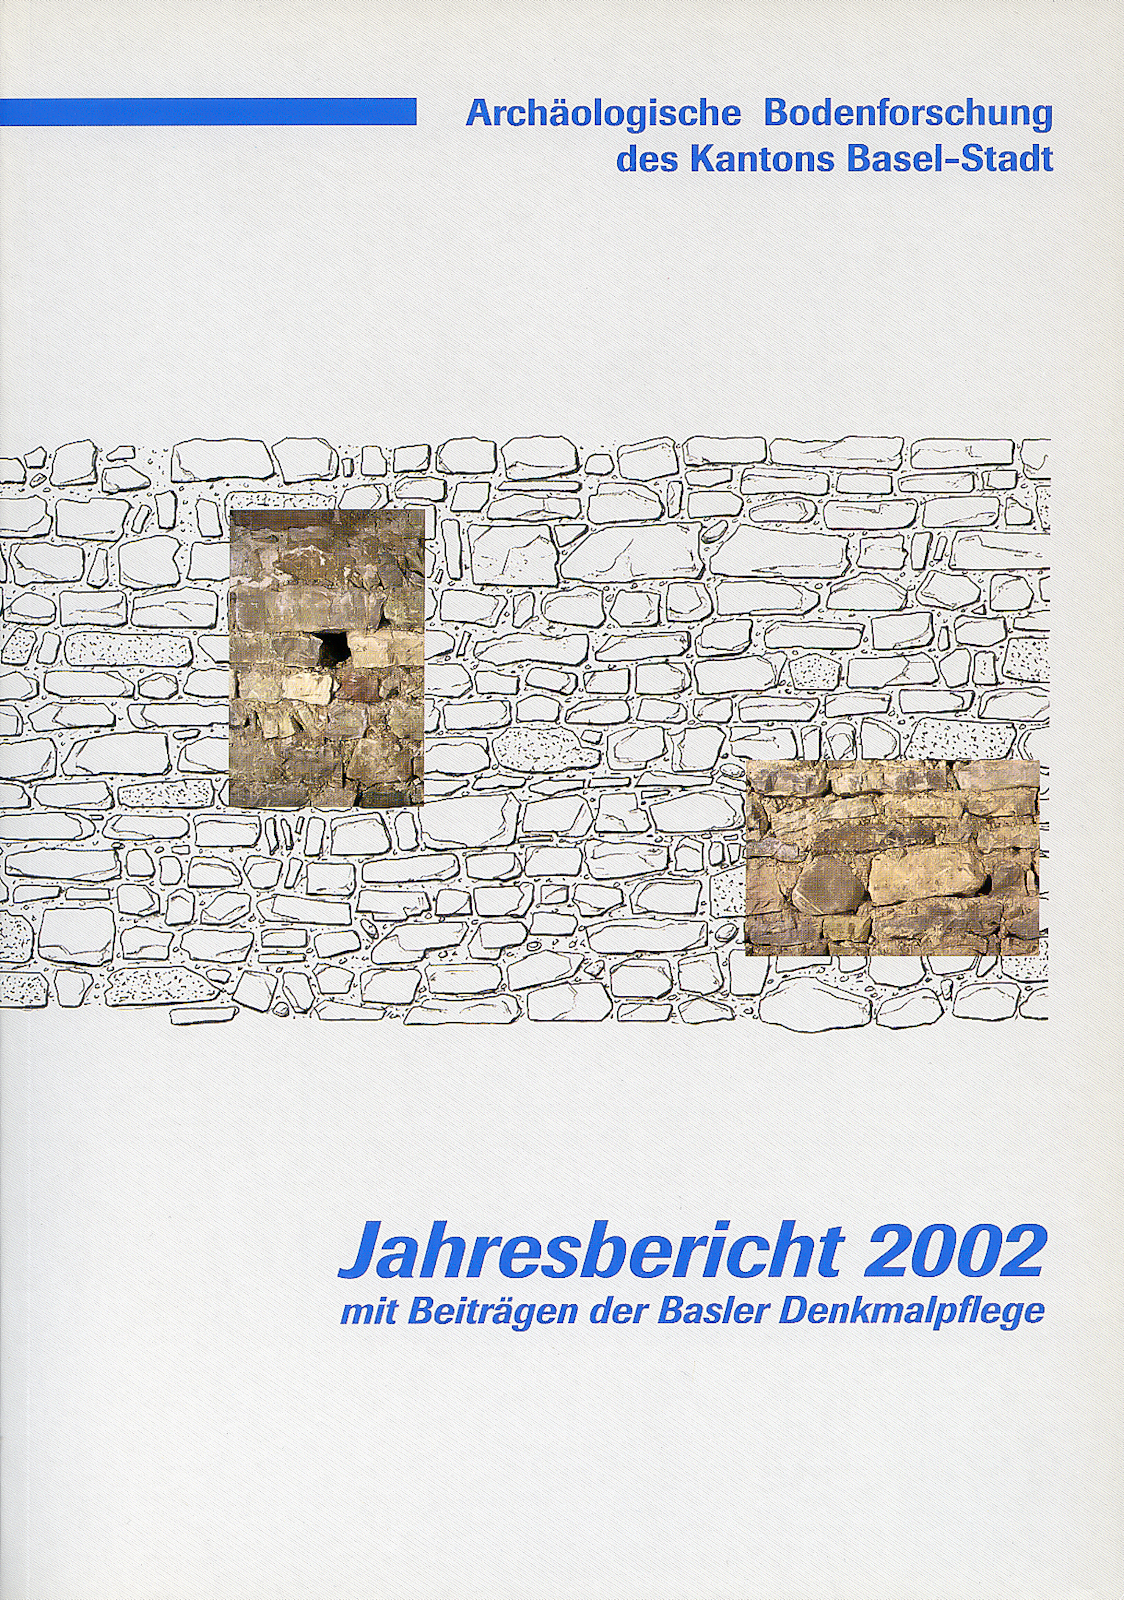 Vorderseite des Jahresberichtes 2002